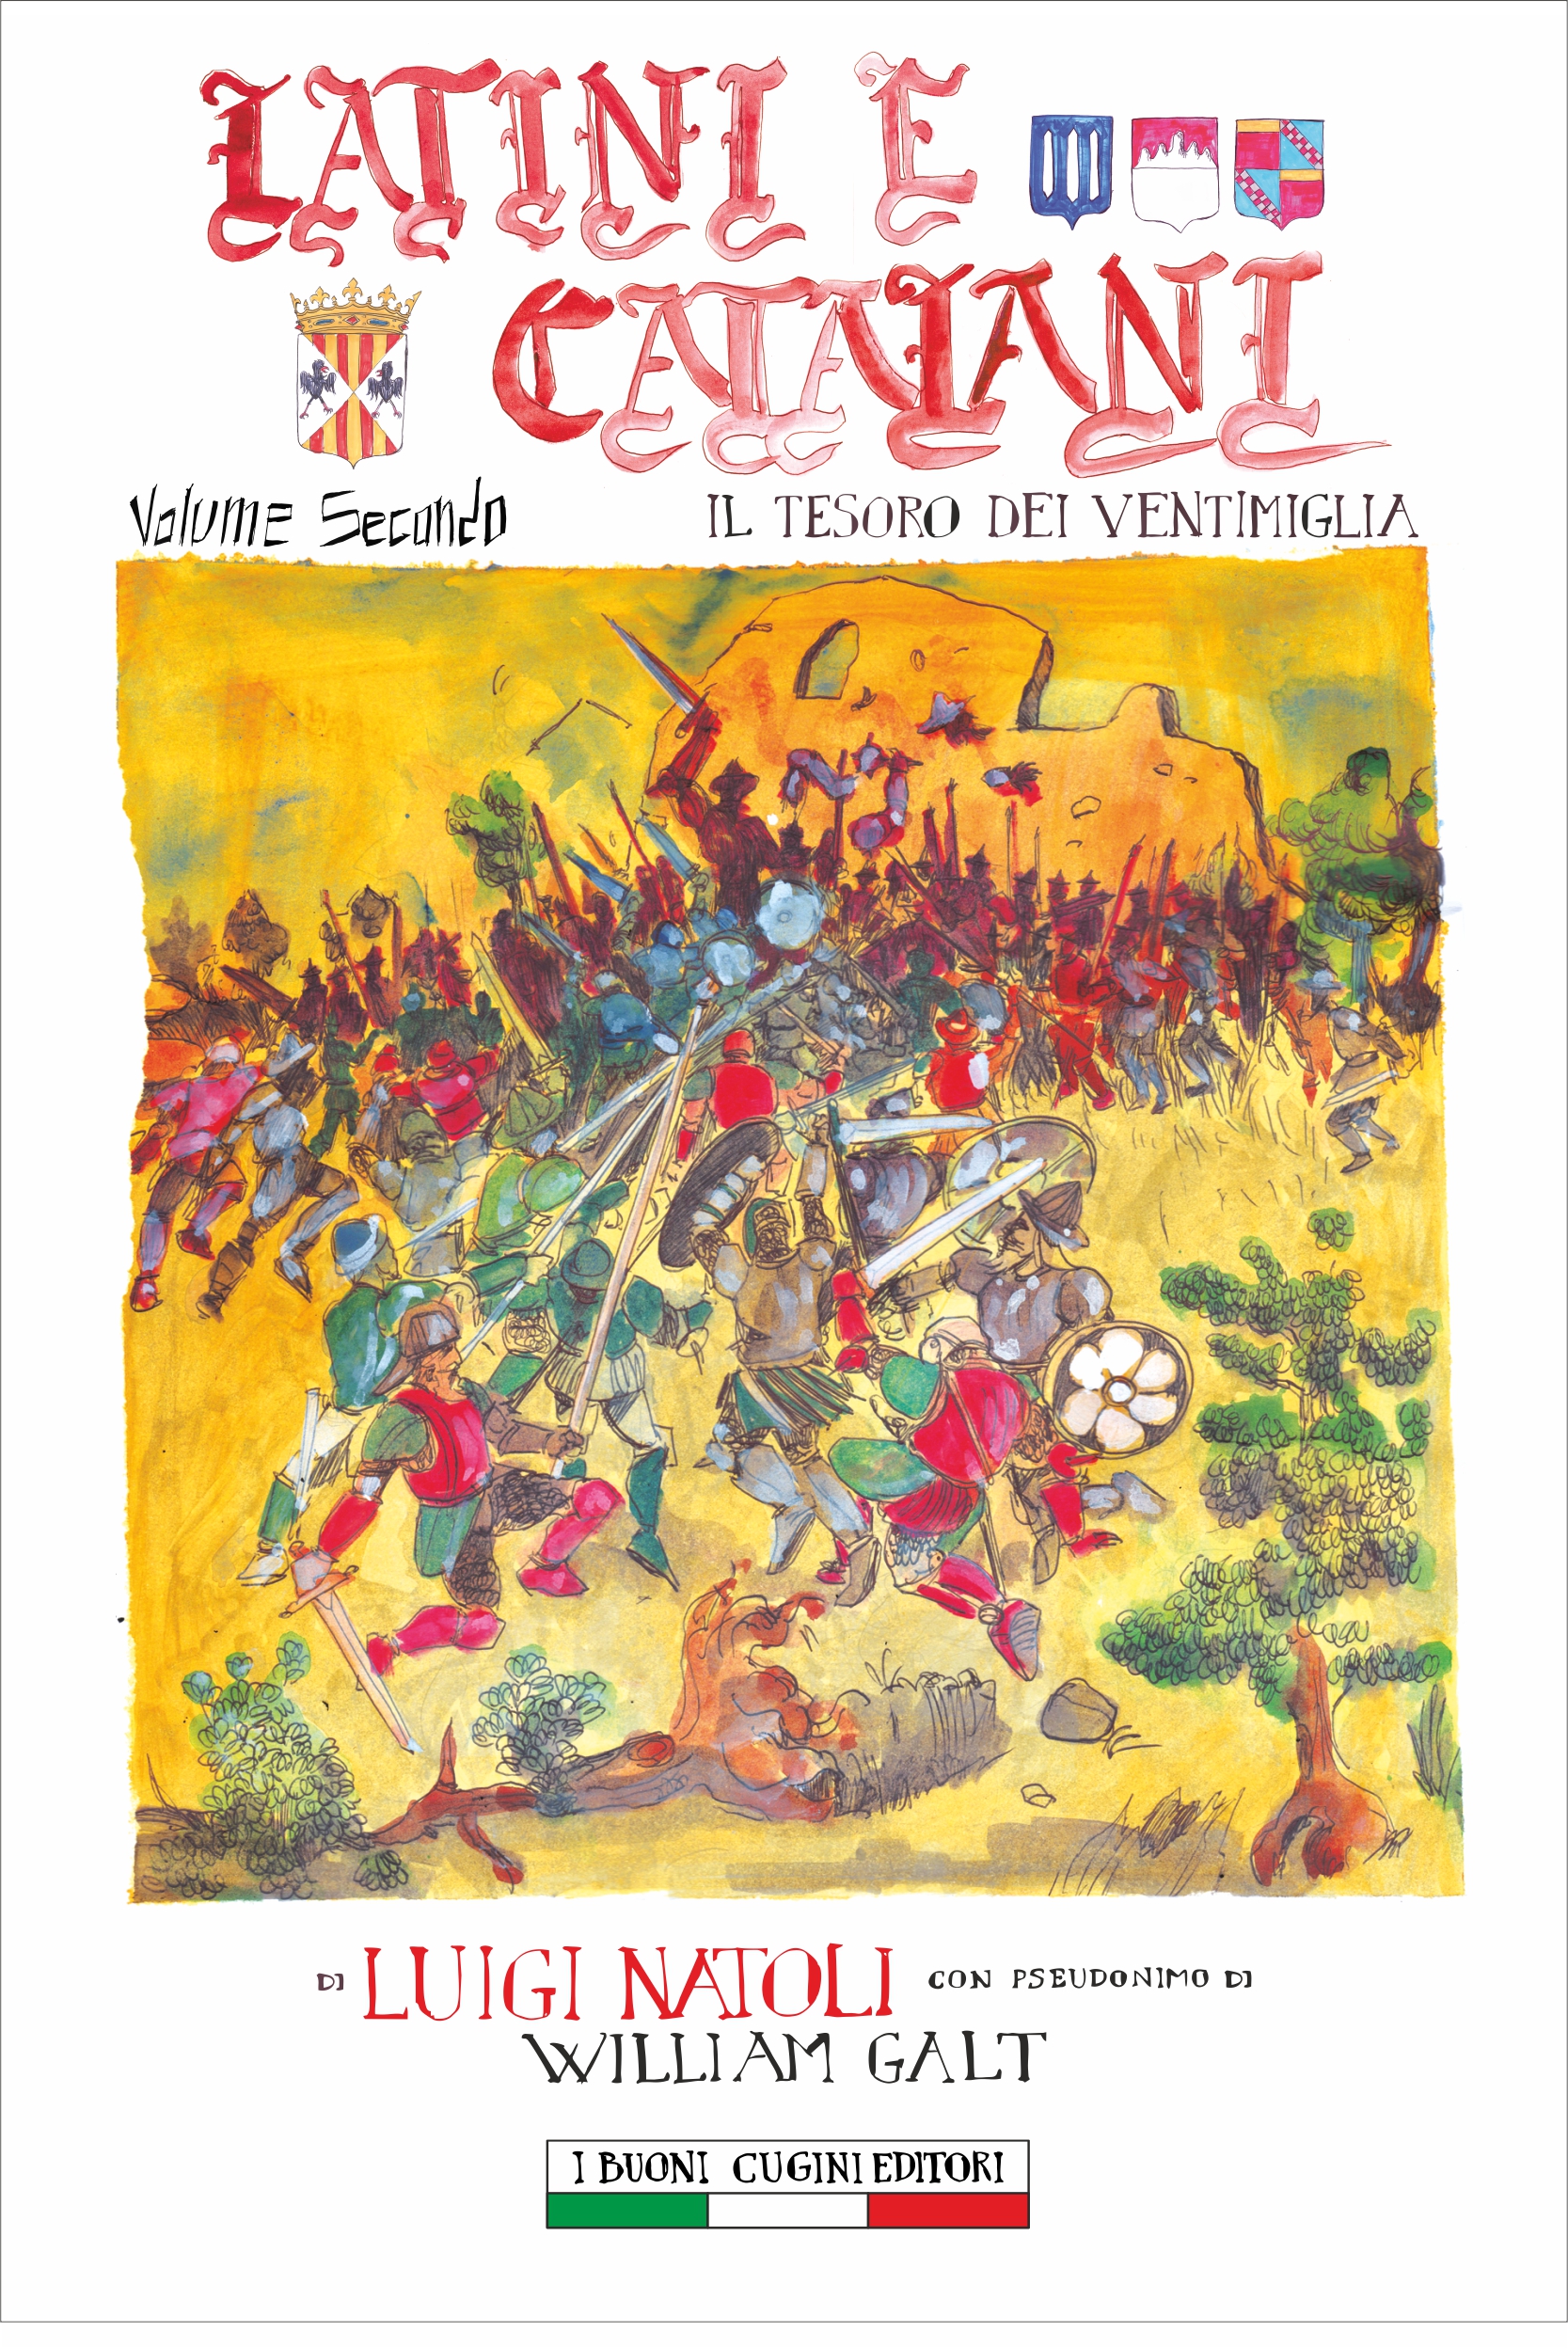 Luigi Natoli: Il tesoro dei Ventimiglia. Latini e Catalani vol. 2. Romanzo storico siciliano